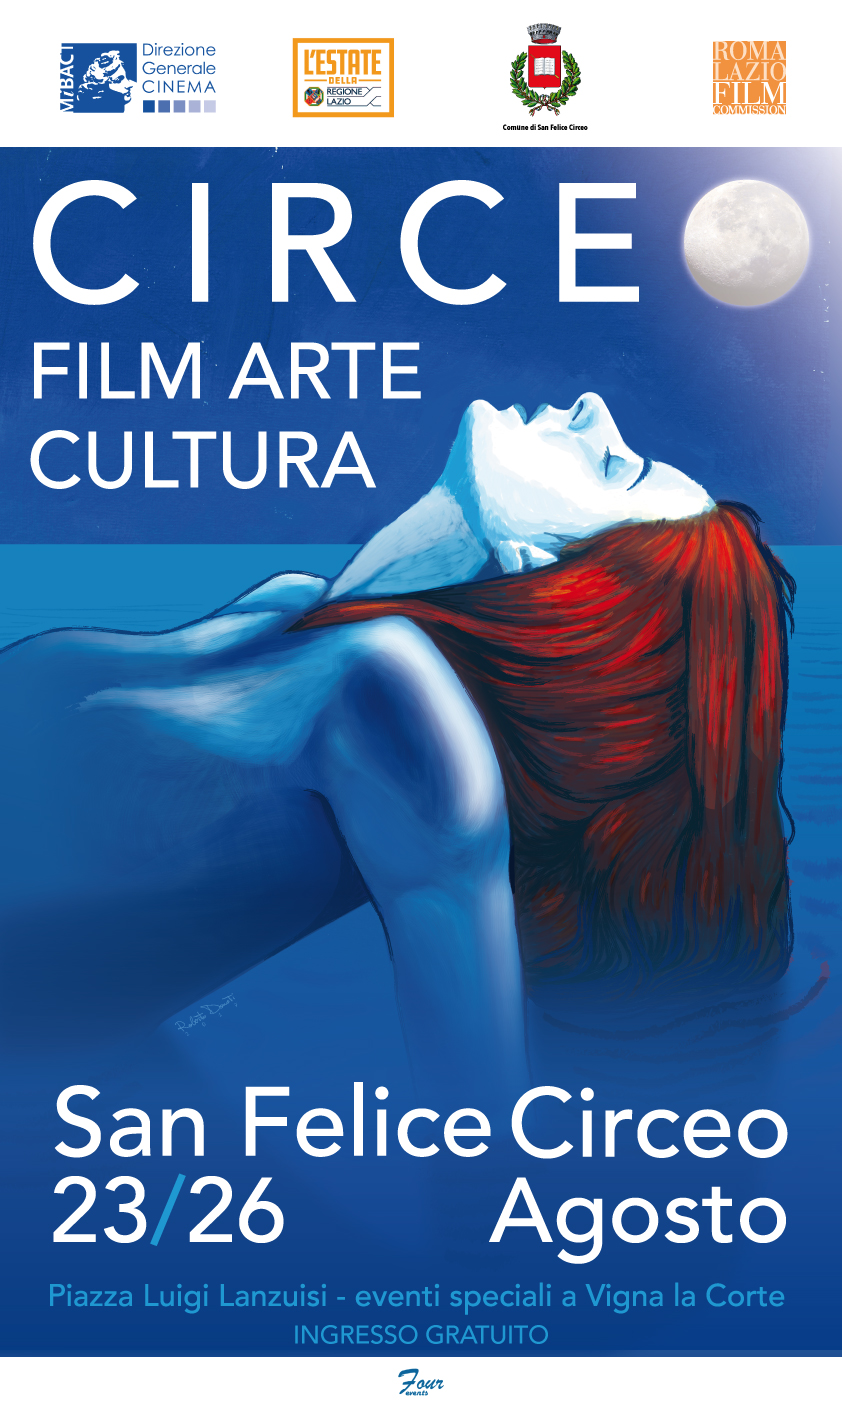 Circeo Film Arte Cultura quattro giorni d’ arte e Vip